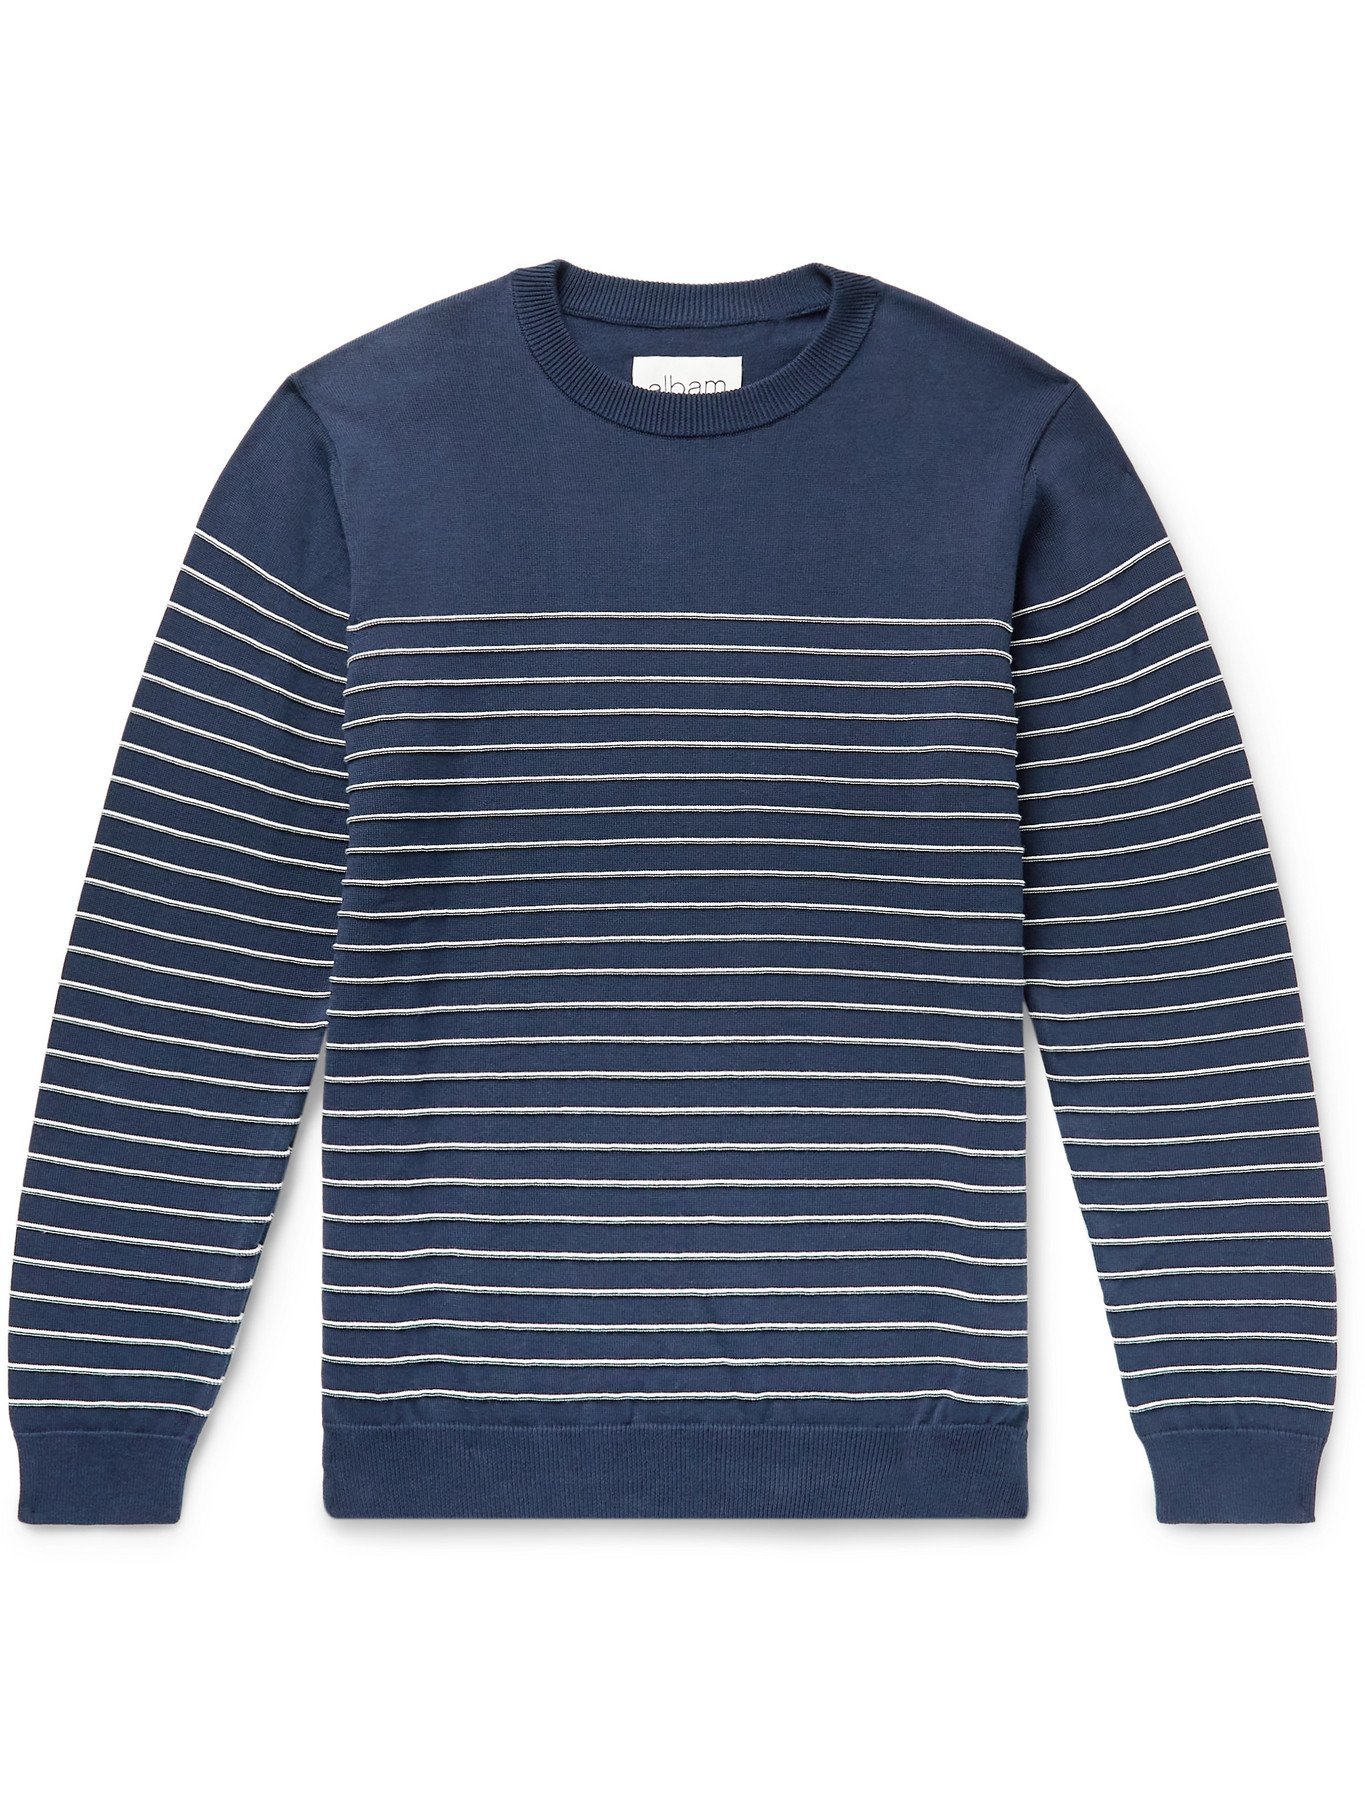 Albam - Striped Cotton Sweater - Blue Albam